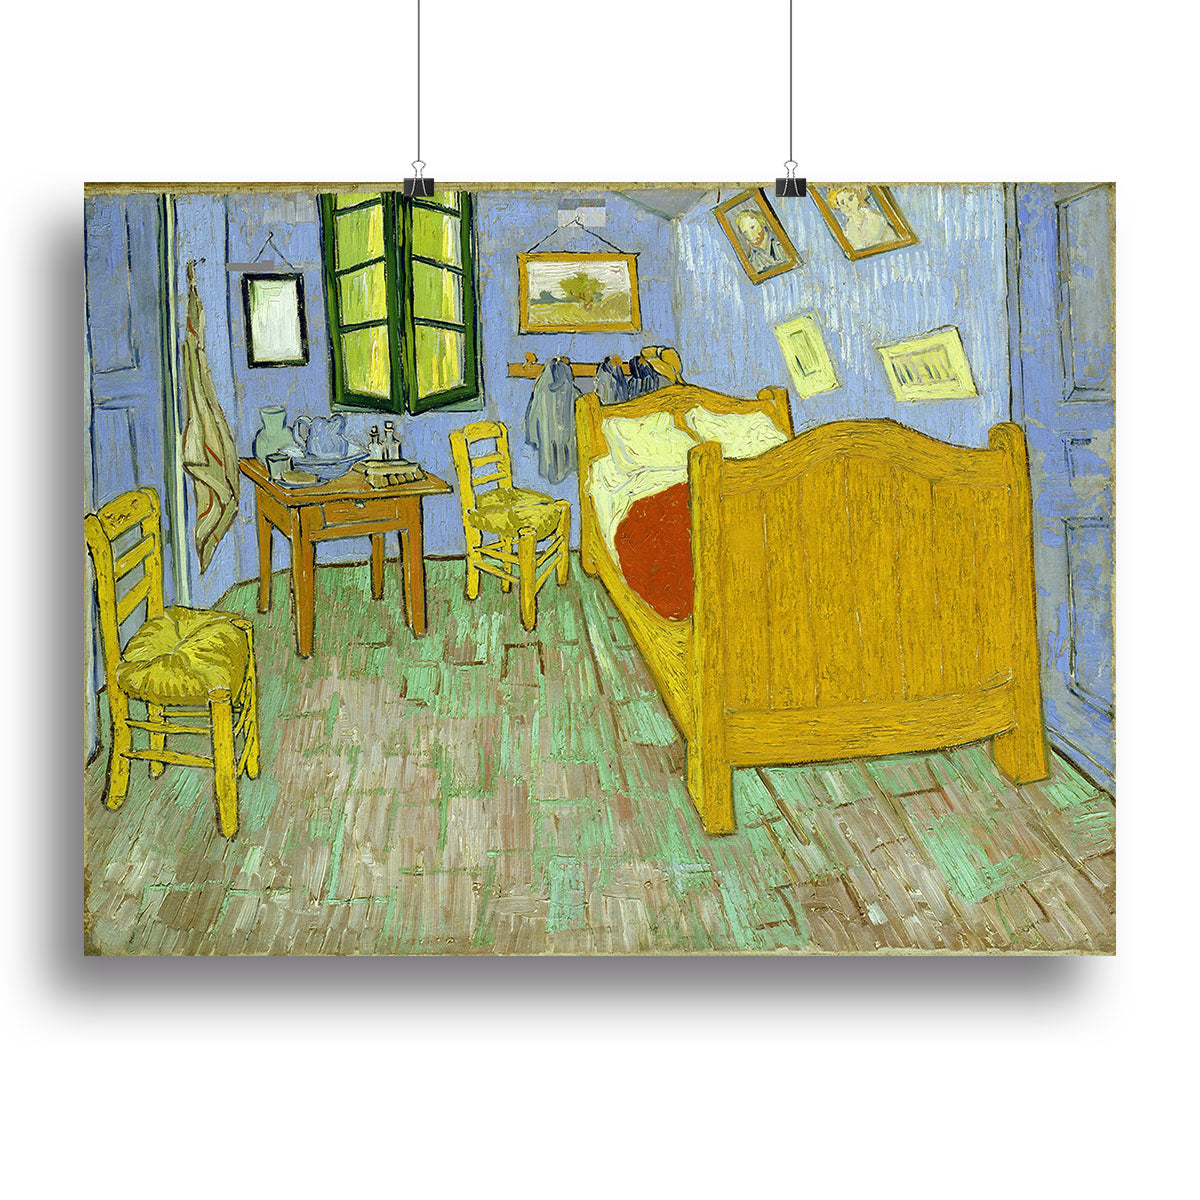 Van Gogh Vincents bedroom Canvas Print or Poster - Canvas Art Rocks - 2